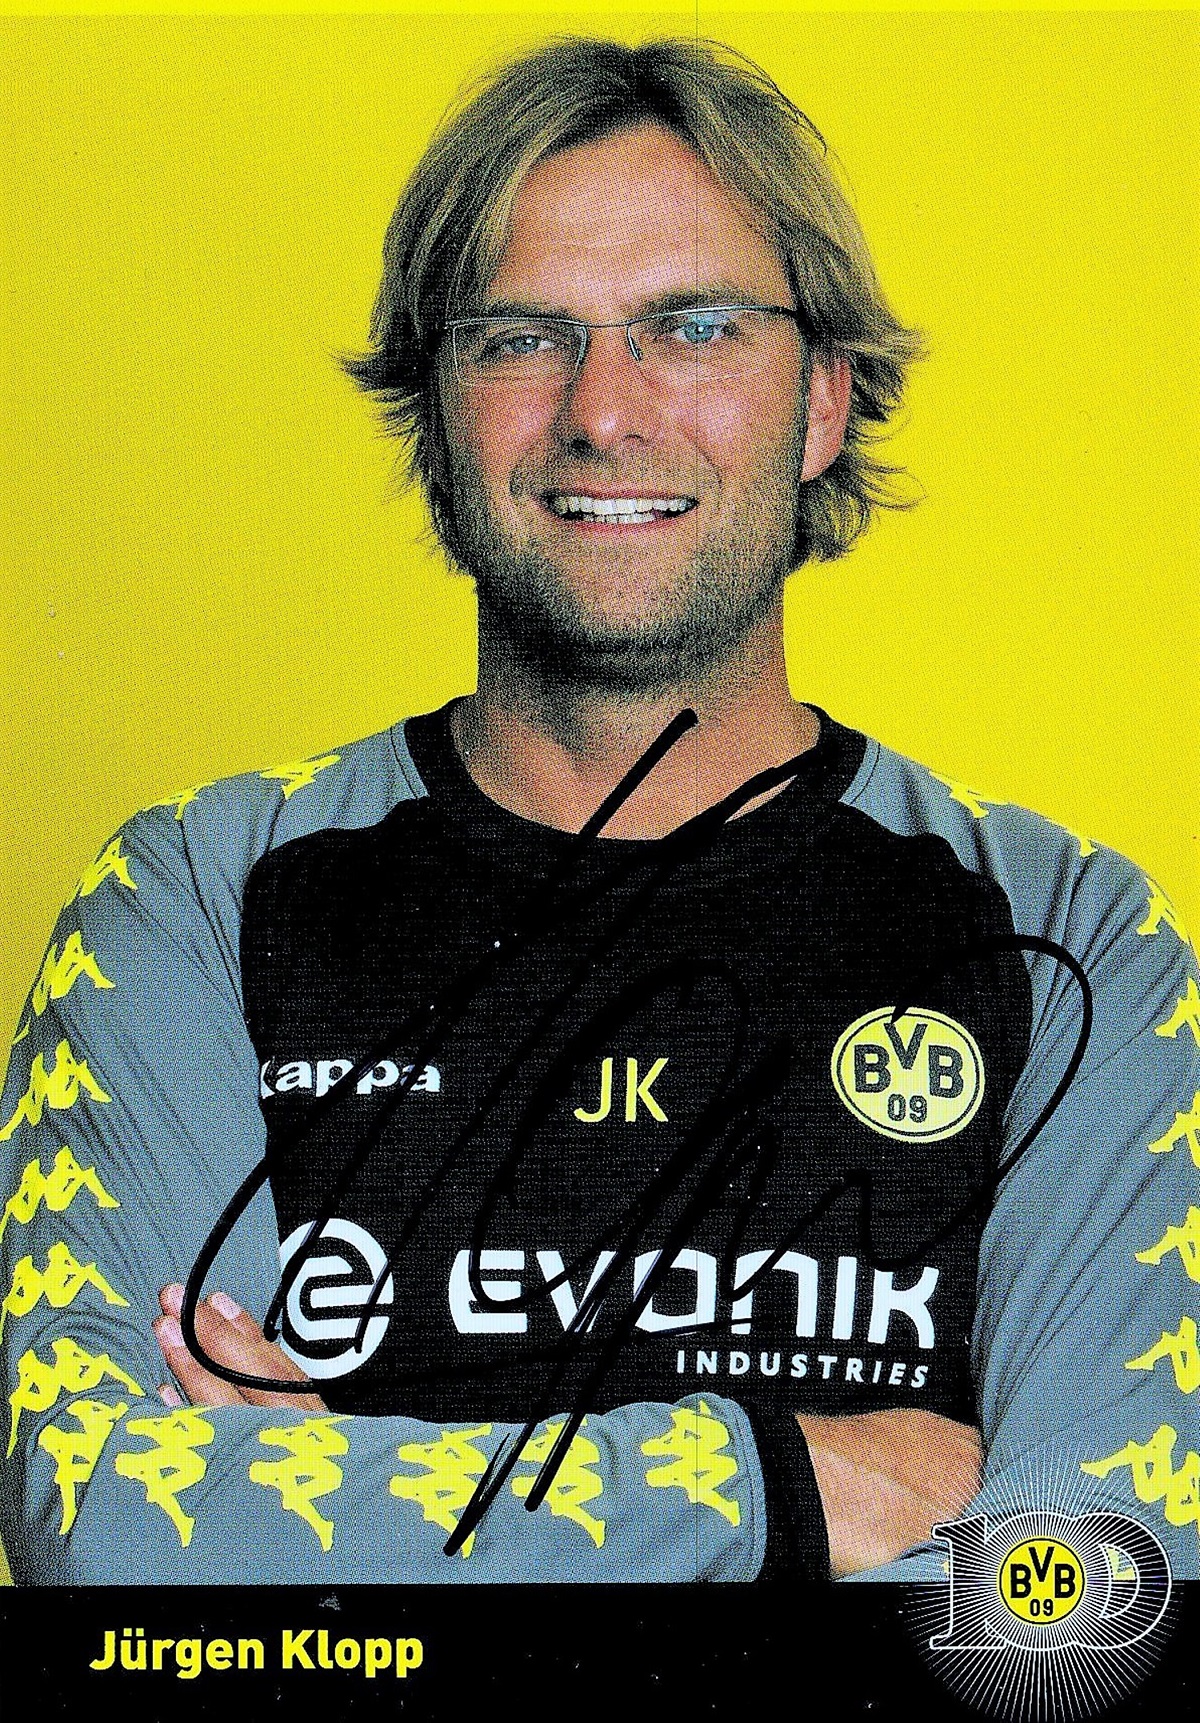 Jürgen Klopp signed 6x4 colour photograph. t Klopp (born 16 June 1967) is a German professional